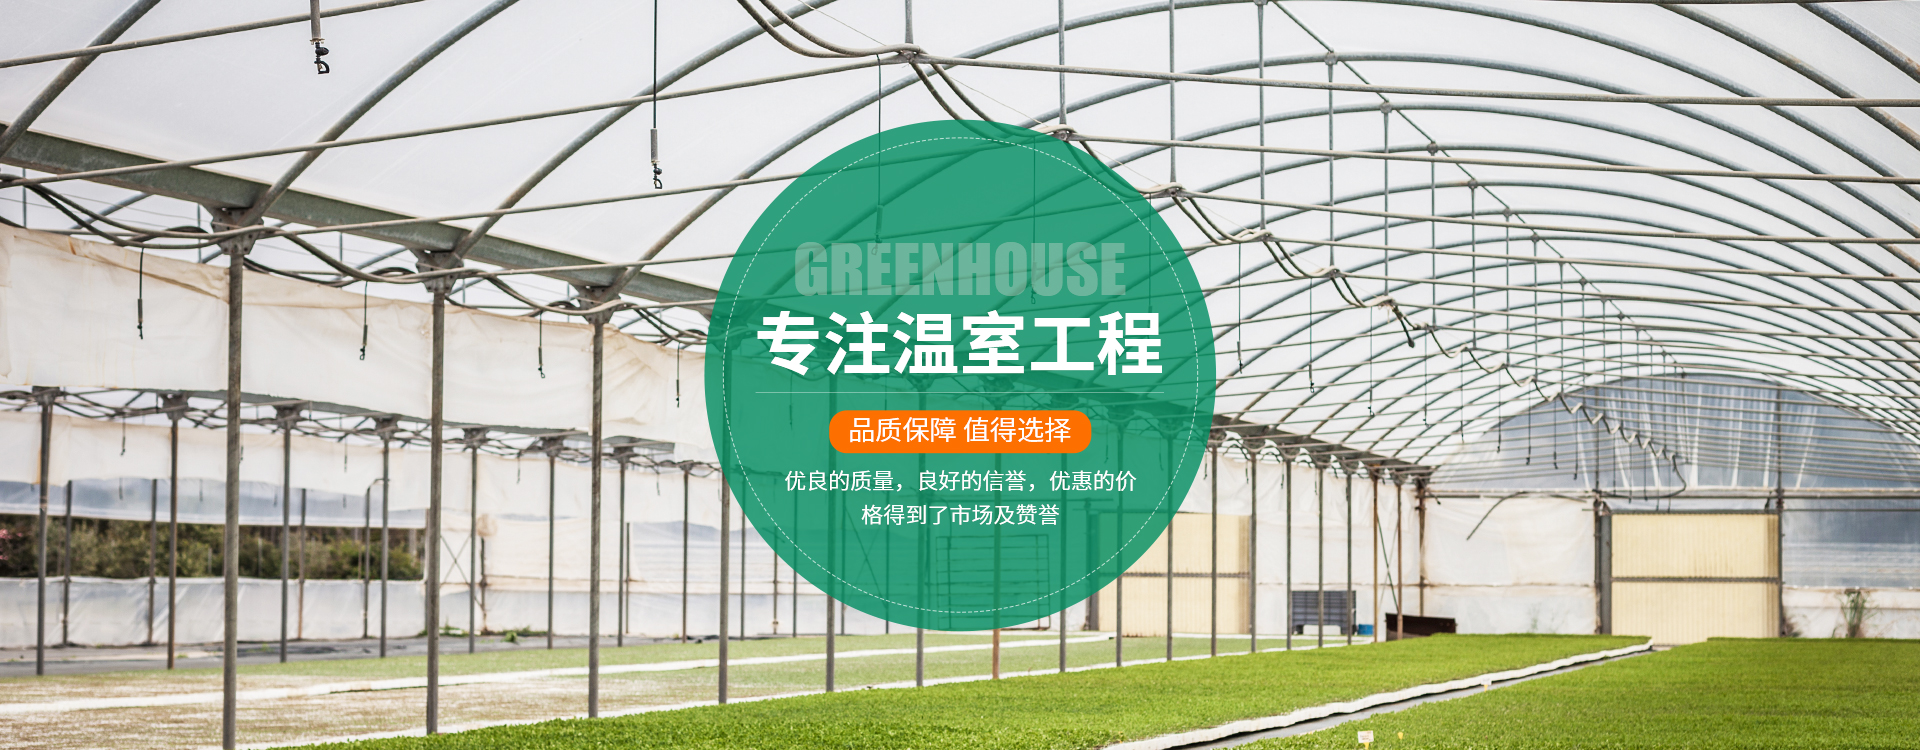 青州市盛乾温室工程有限公司